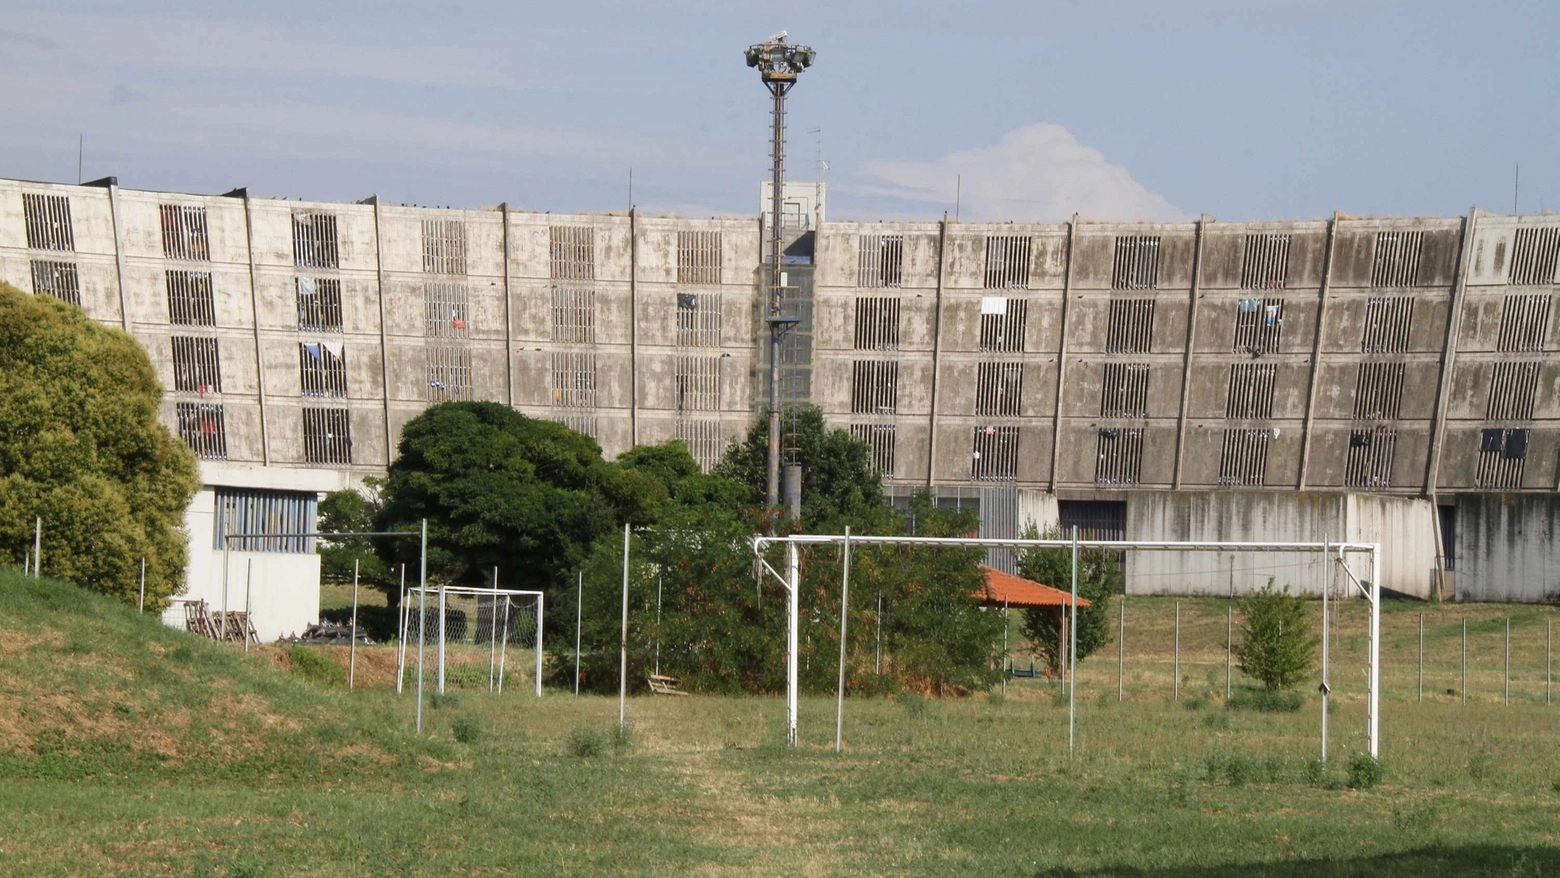 Un'immagine dell'esterno del carcere di Sollicciano a Firenze